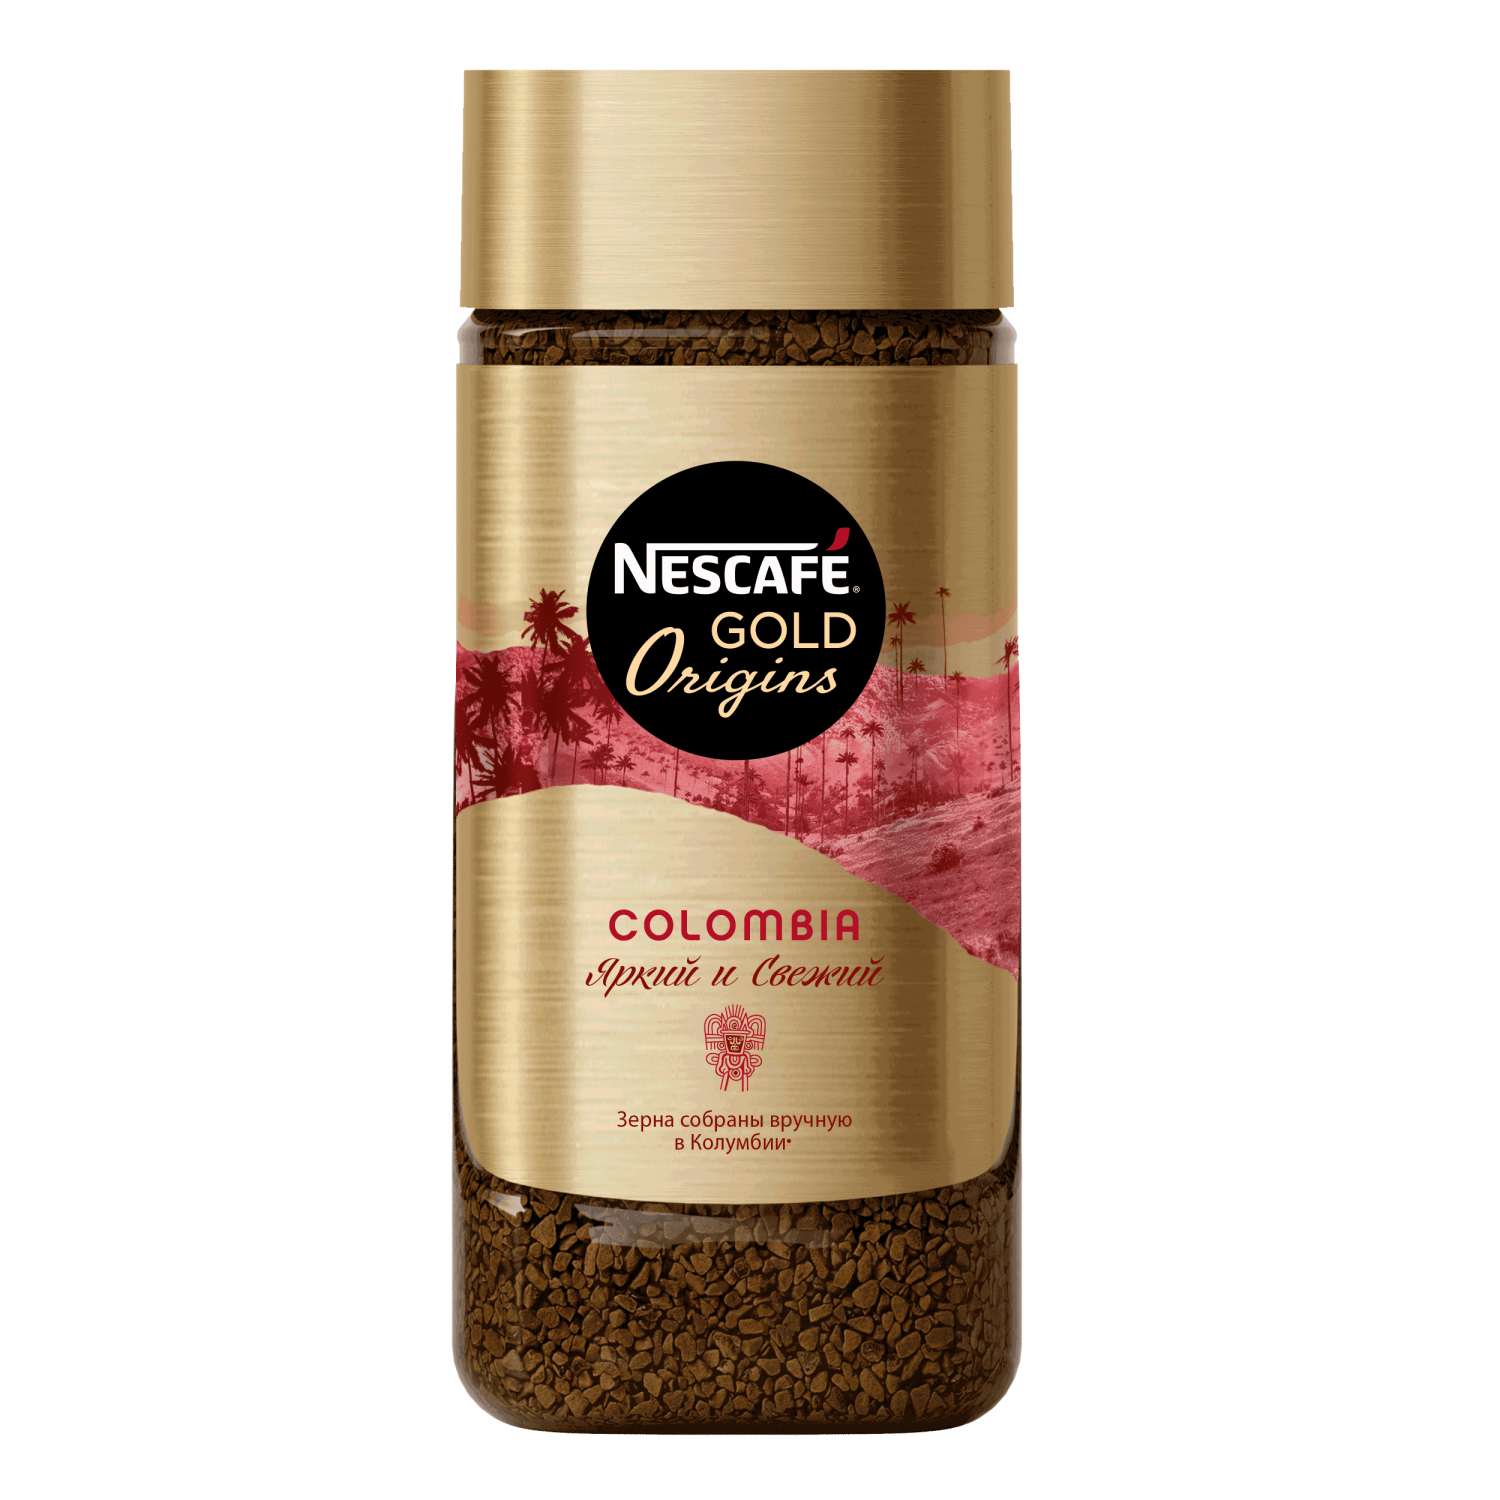 Nescafe gold сублимированный. Нескафе Голд Оригинс. Nescafe Gold Origins. Nescafe Gold Origins Colombia. Кофе растворимый Nescafe Gold 900.